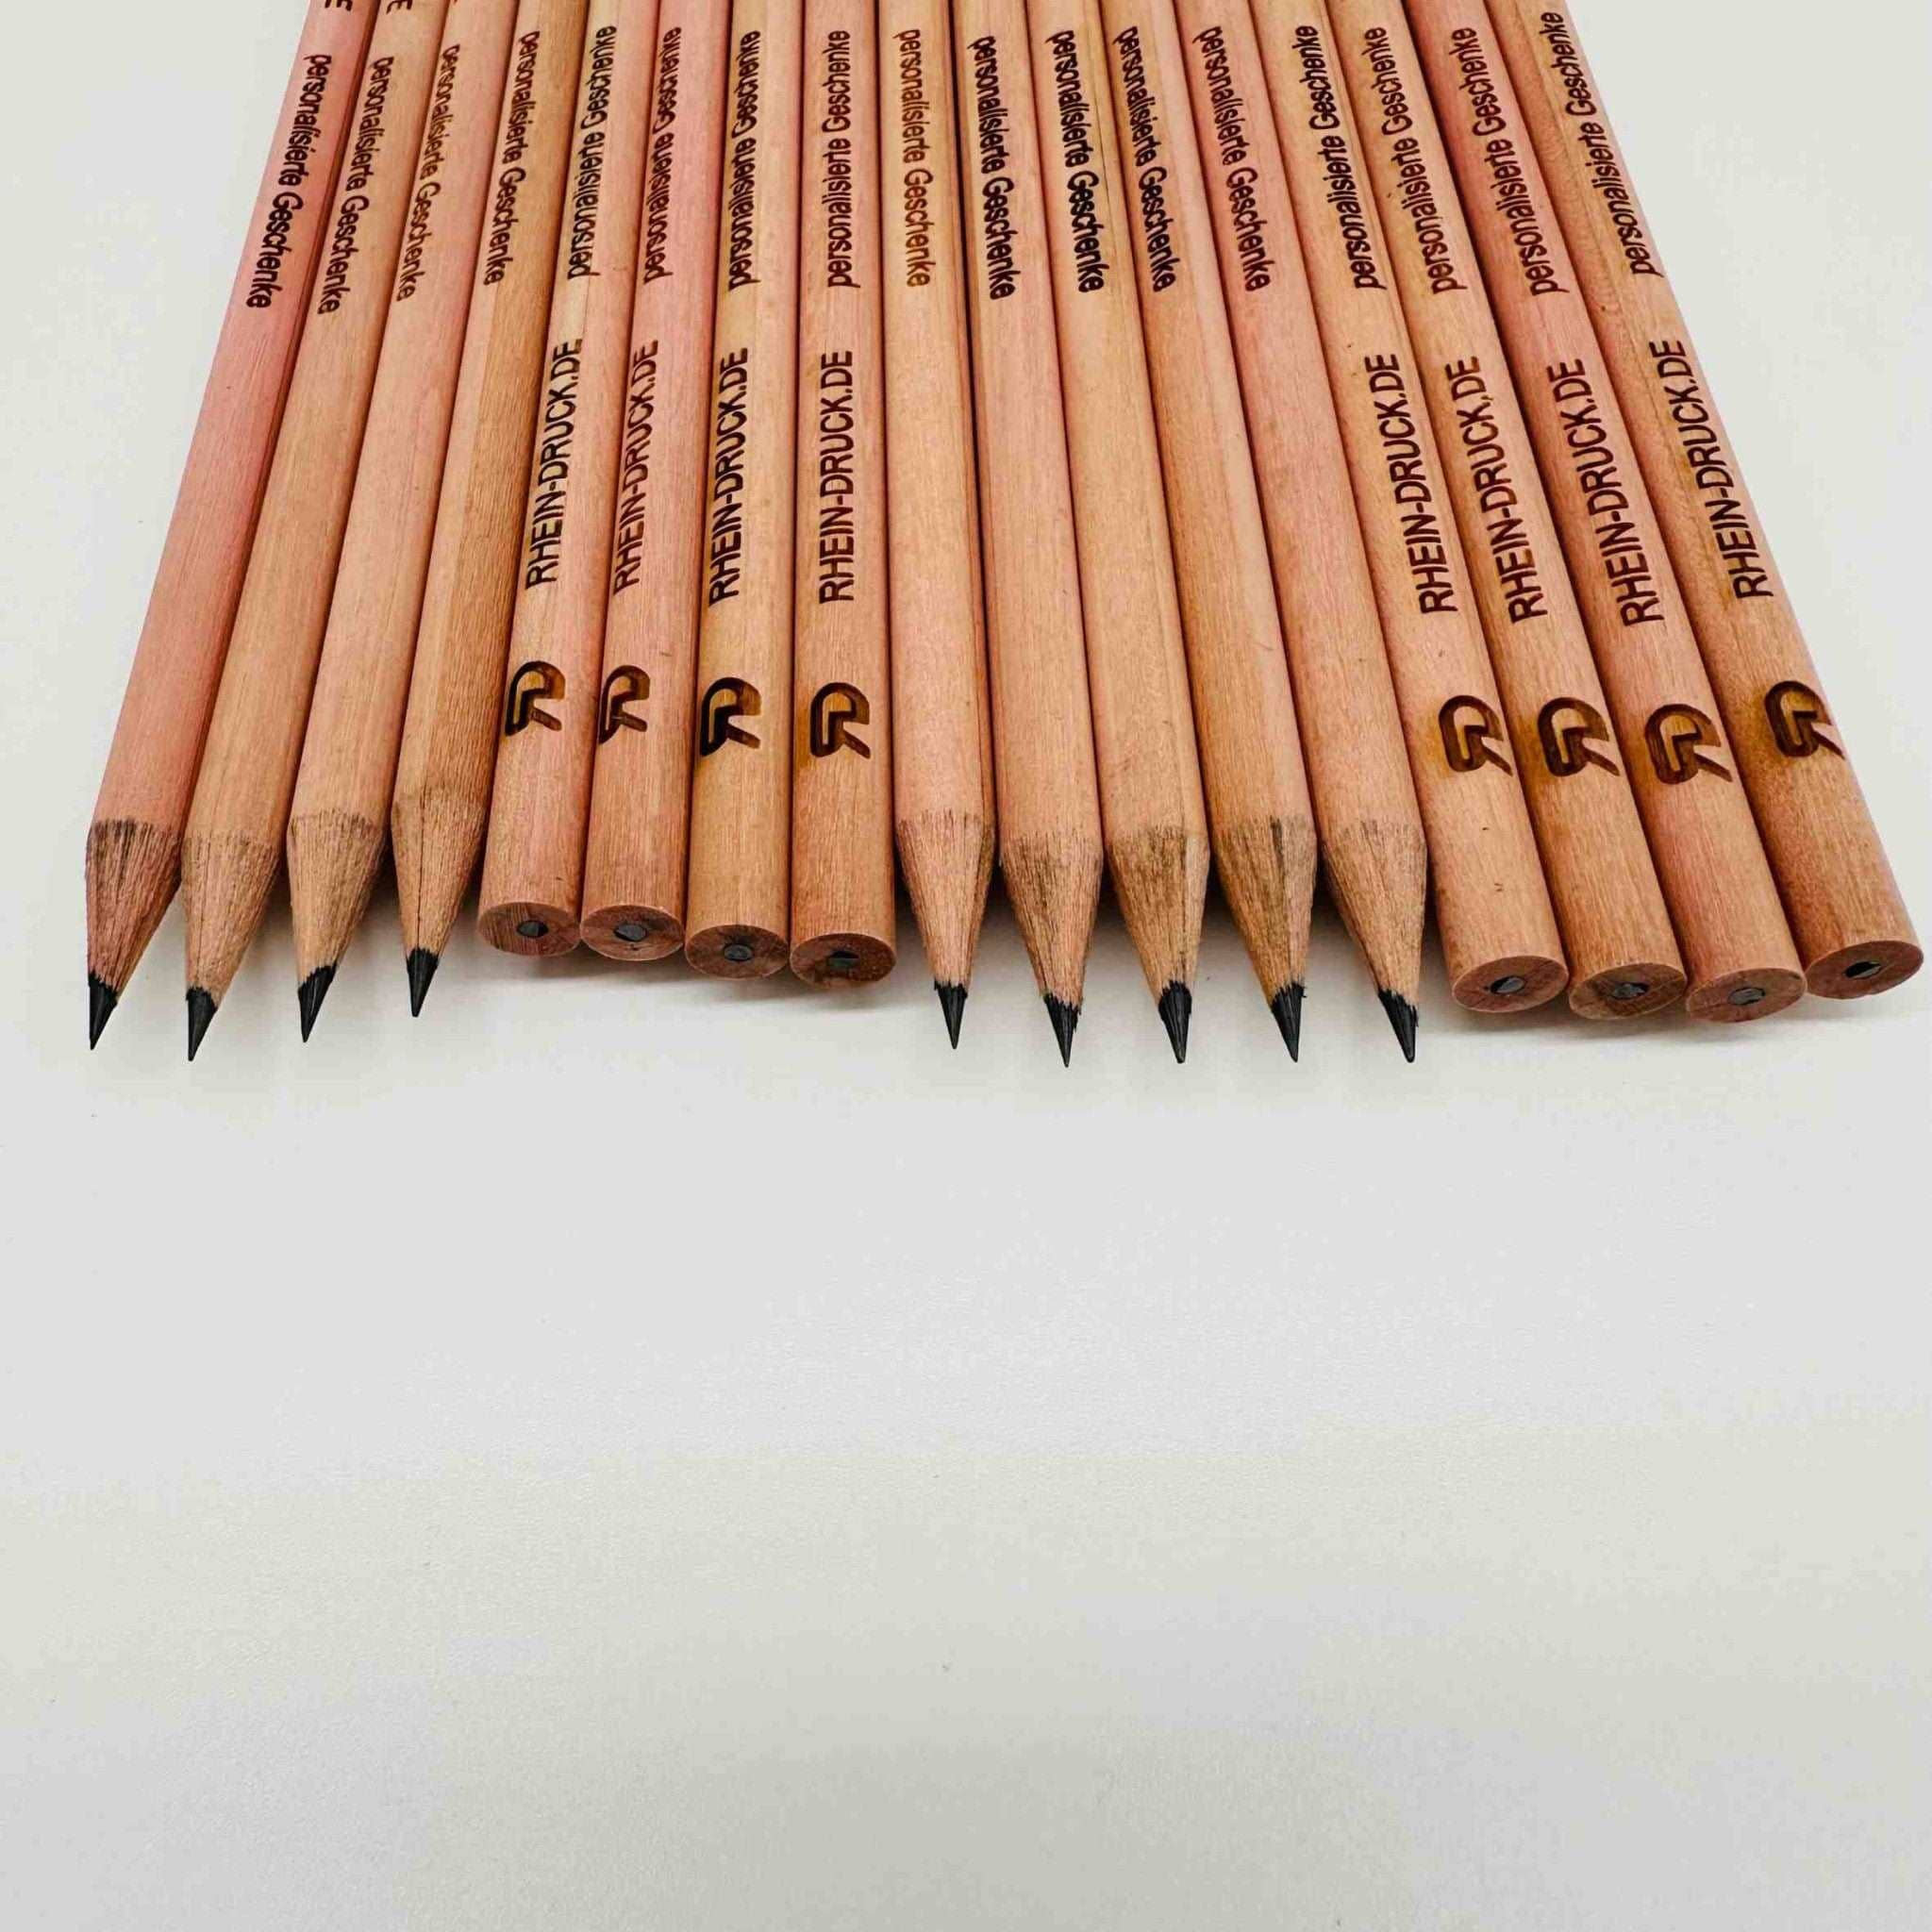 Bleistift mit Namen, für berufliche und private Zwecke, FSC, klimaneutral, 50 Stück Villa-Schwein 